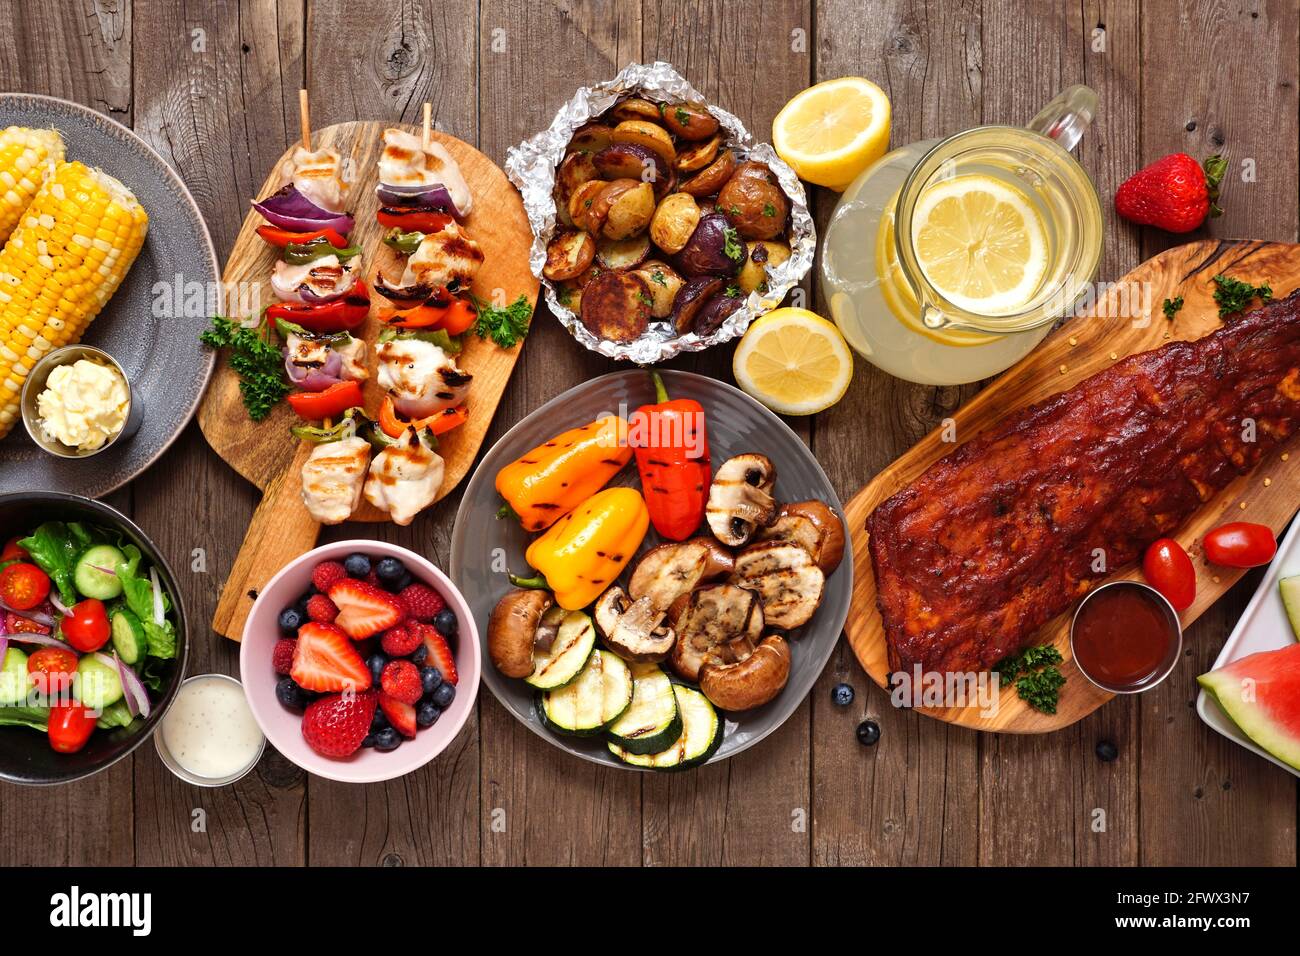 Barbecue d'été ou table de pique-nique. Sélection de viandes grillées, de légumes, de fruits, de salades et de pommes de terre. Vue de haut en bas sur un arrière-plan en bois sombre. Banque D'Images